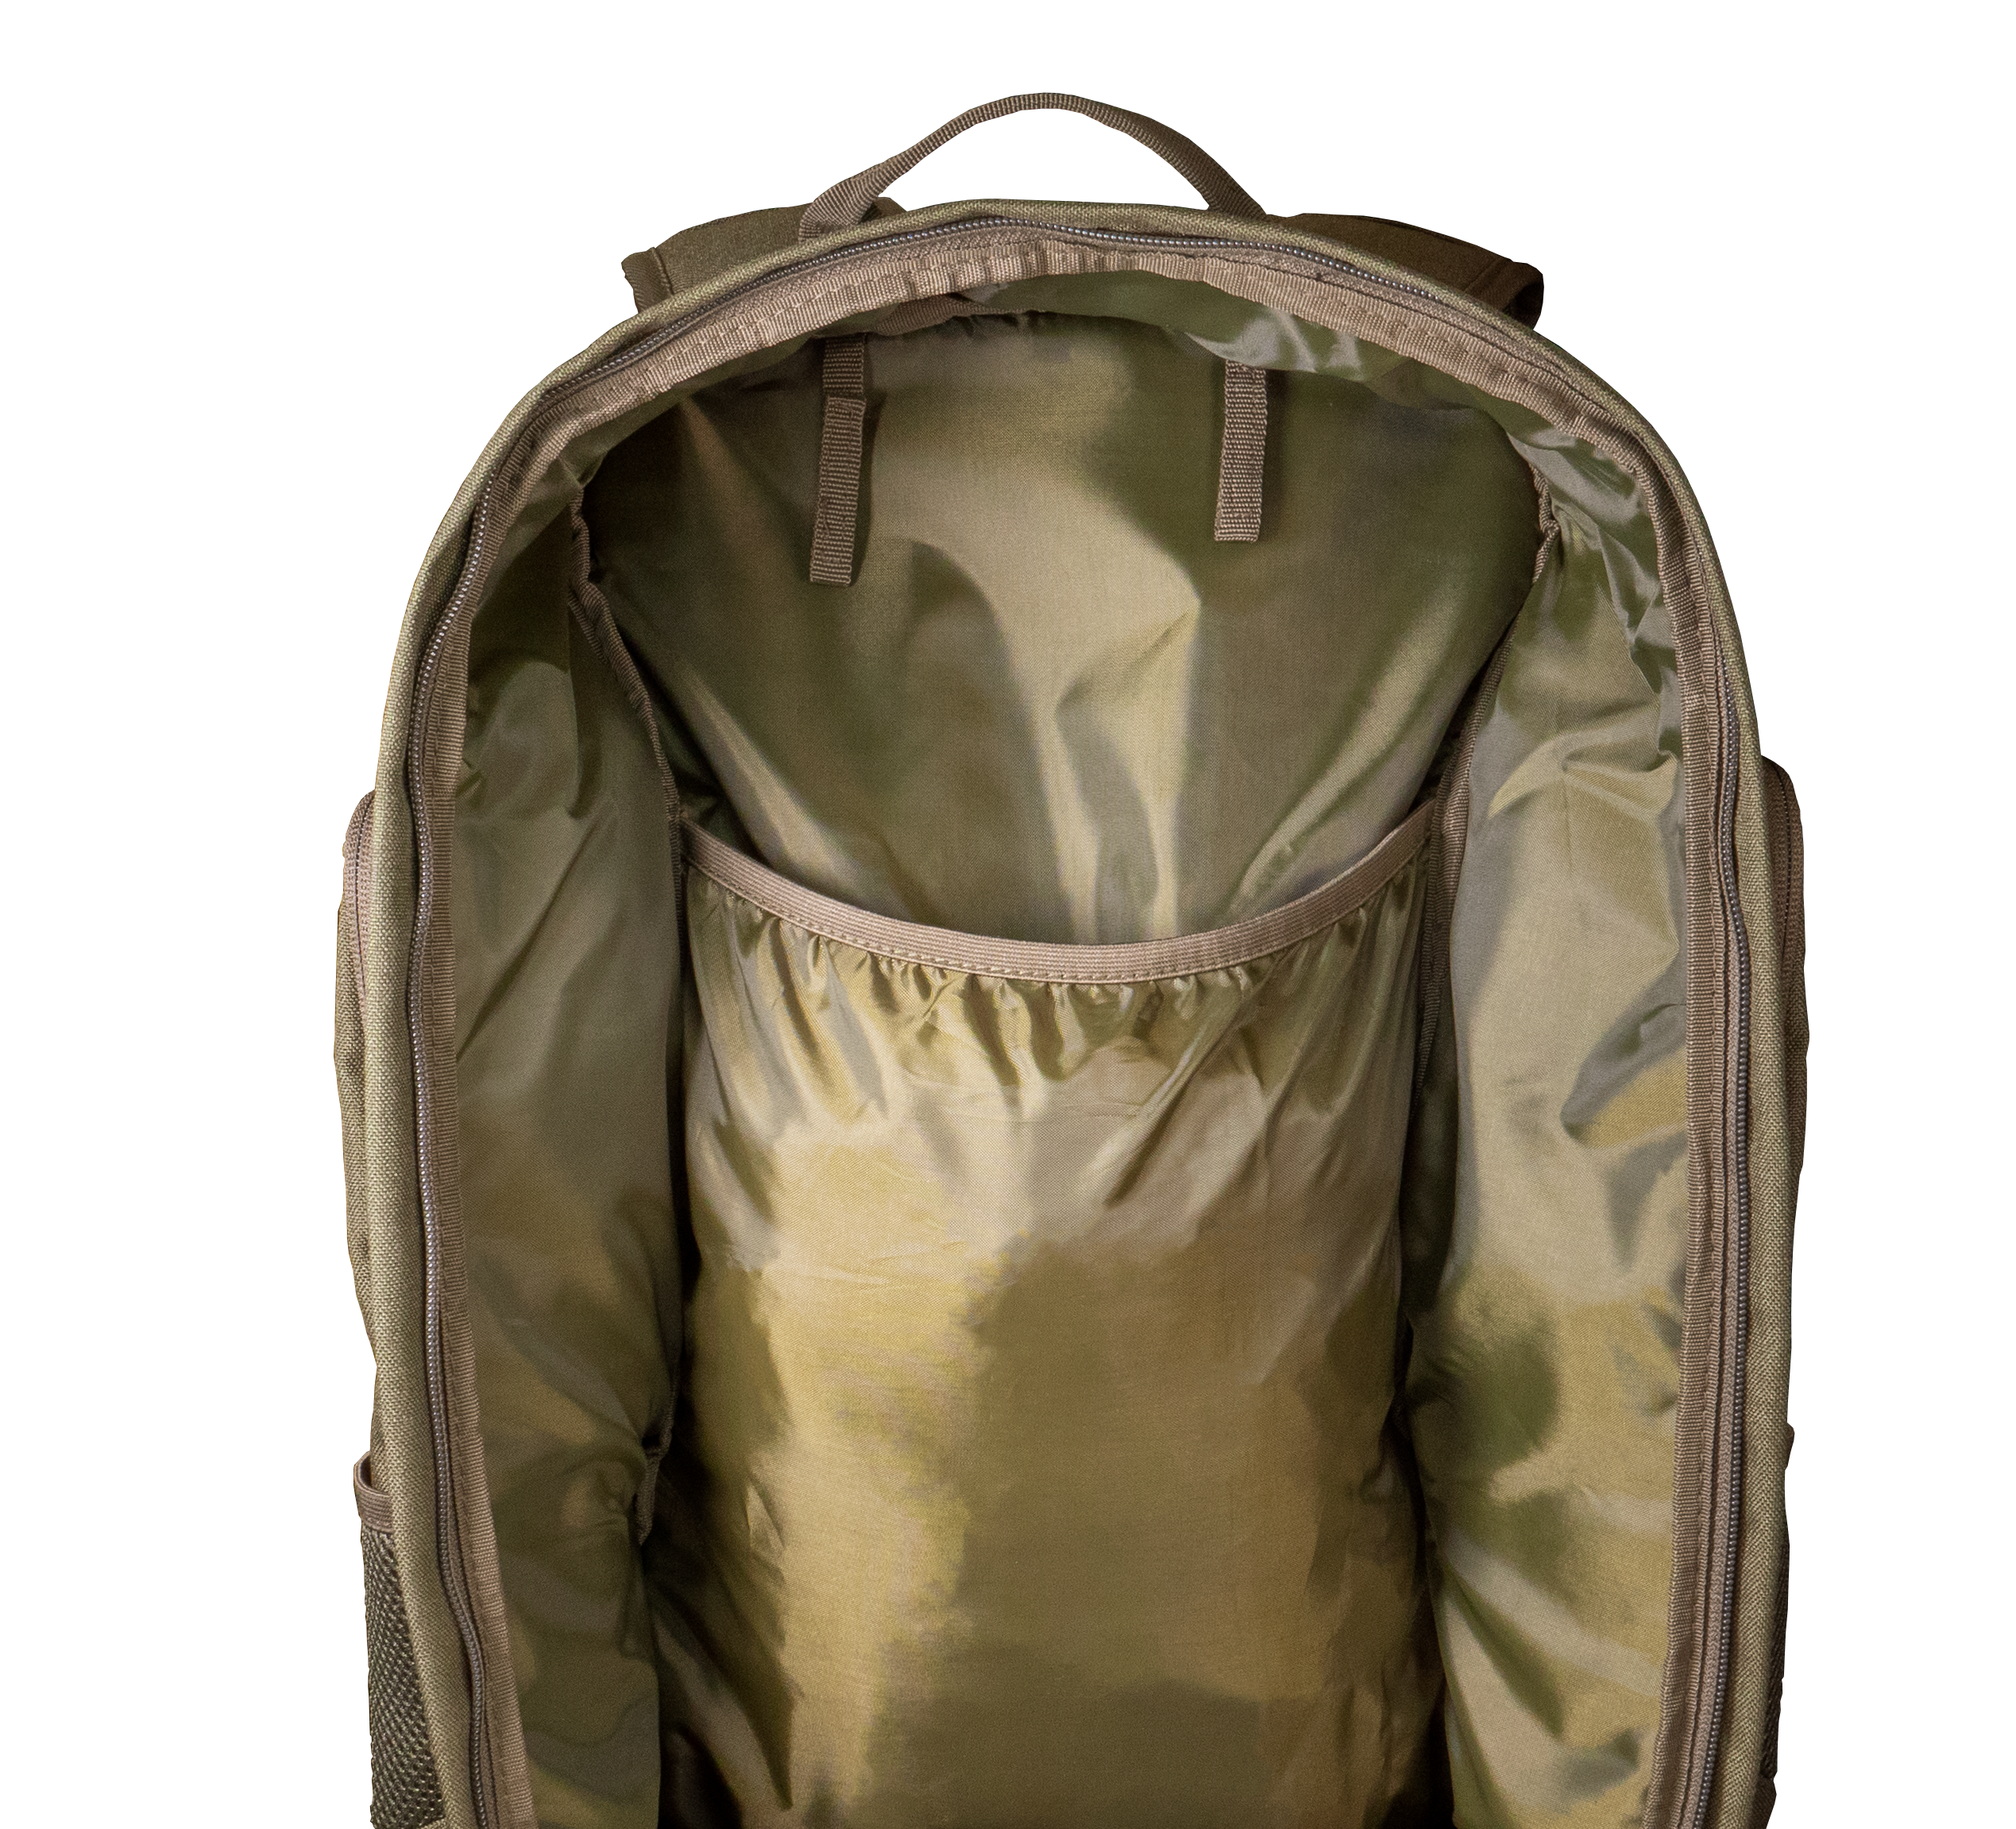 DAYPACK 35L backpack